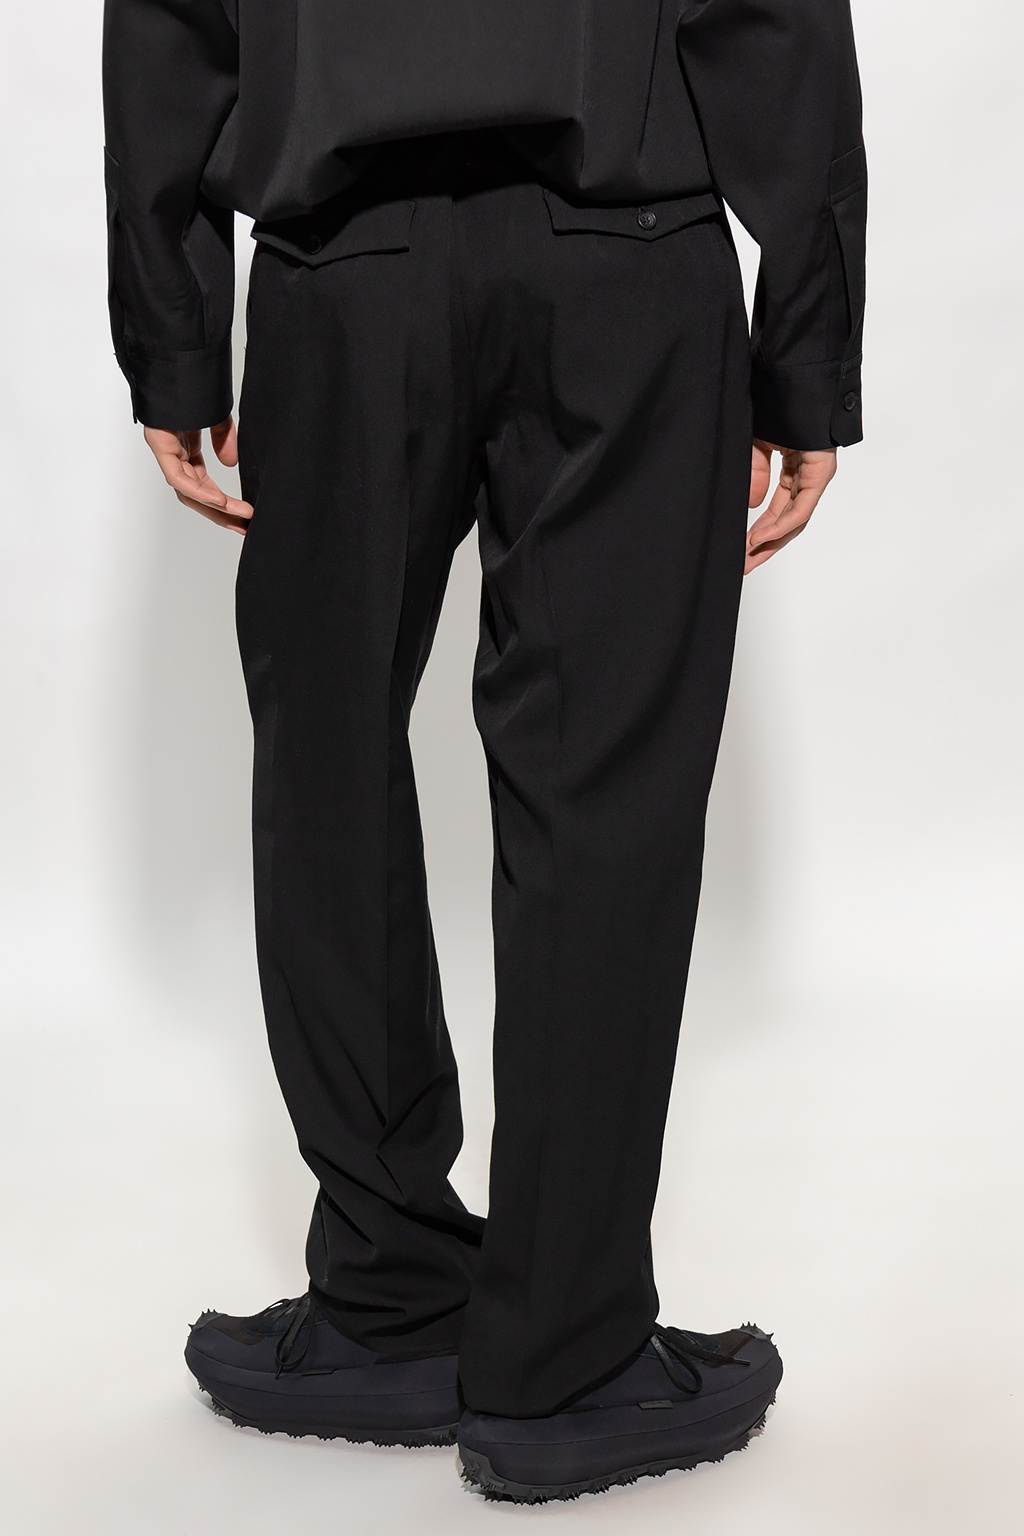 Yohji Yamamoto Pleat-front trousers